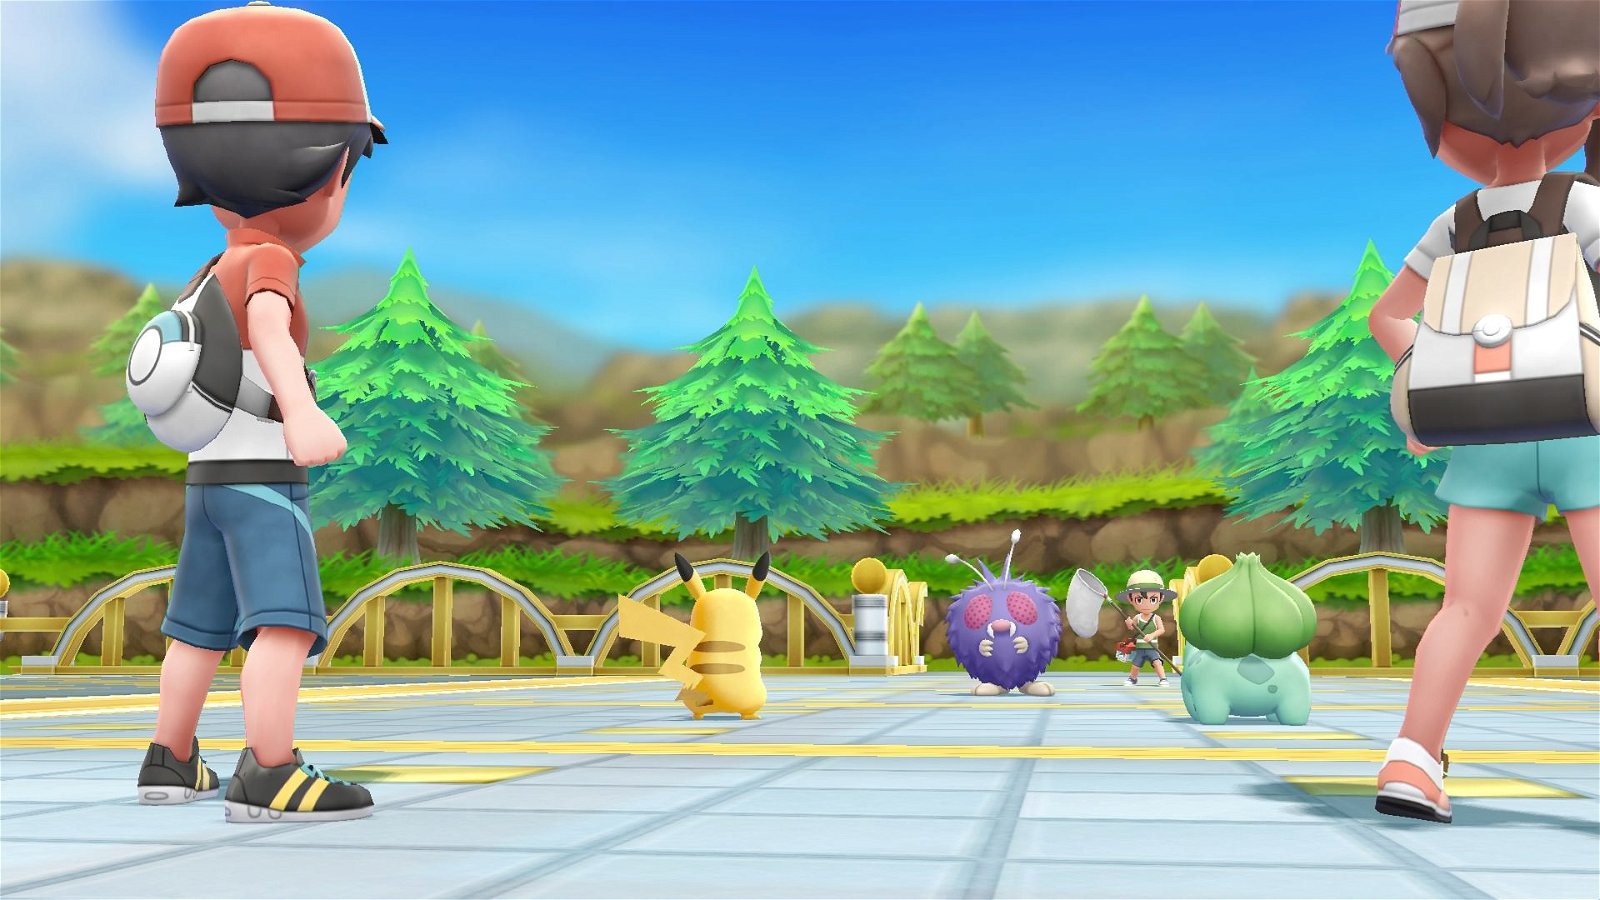 Pokémon Jade y Pokémon Ópalo podrían ser las versiones de la octava generación